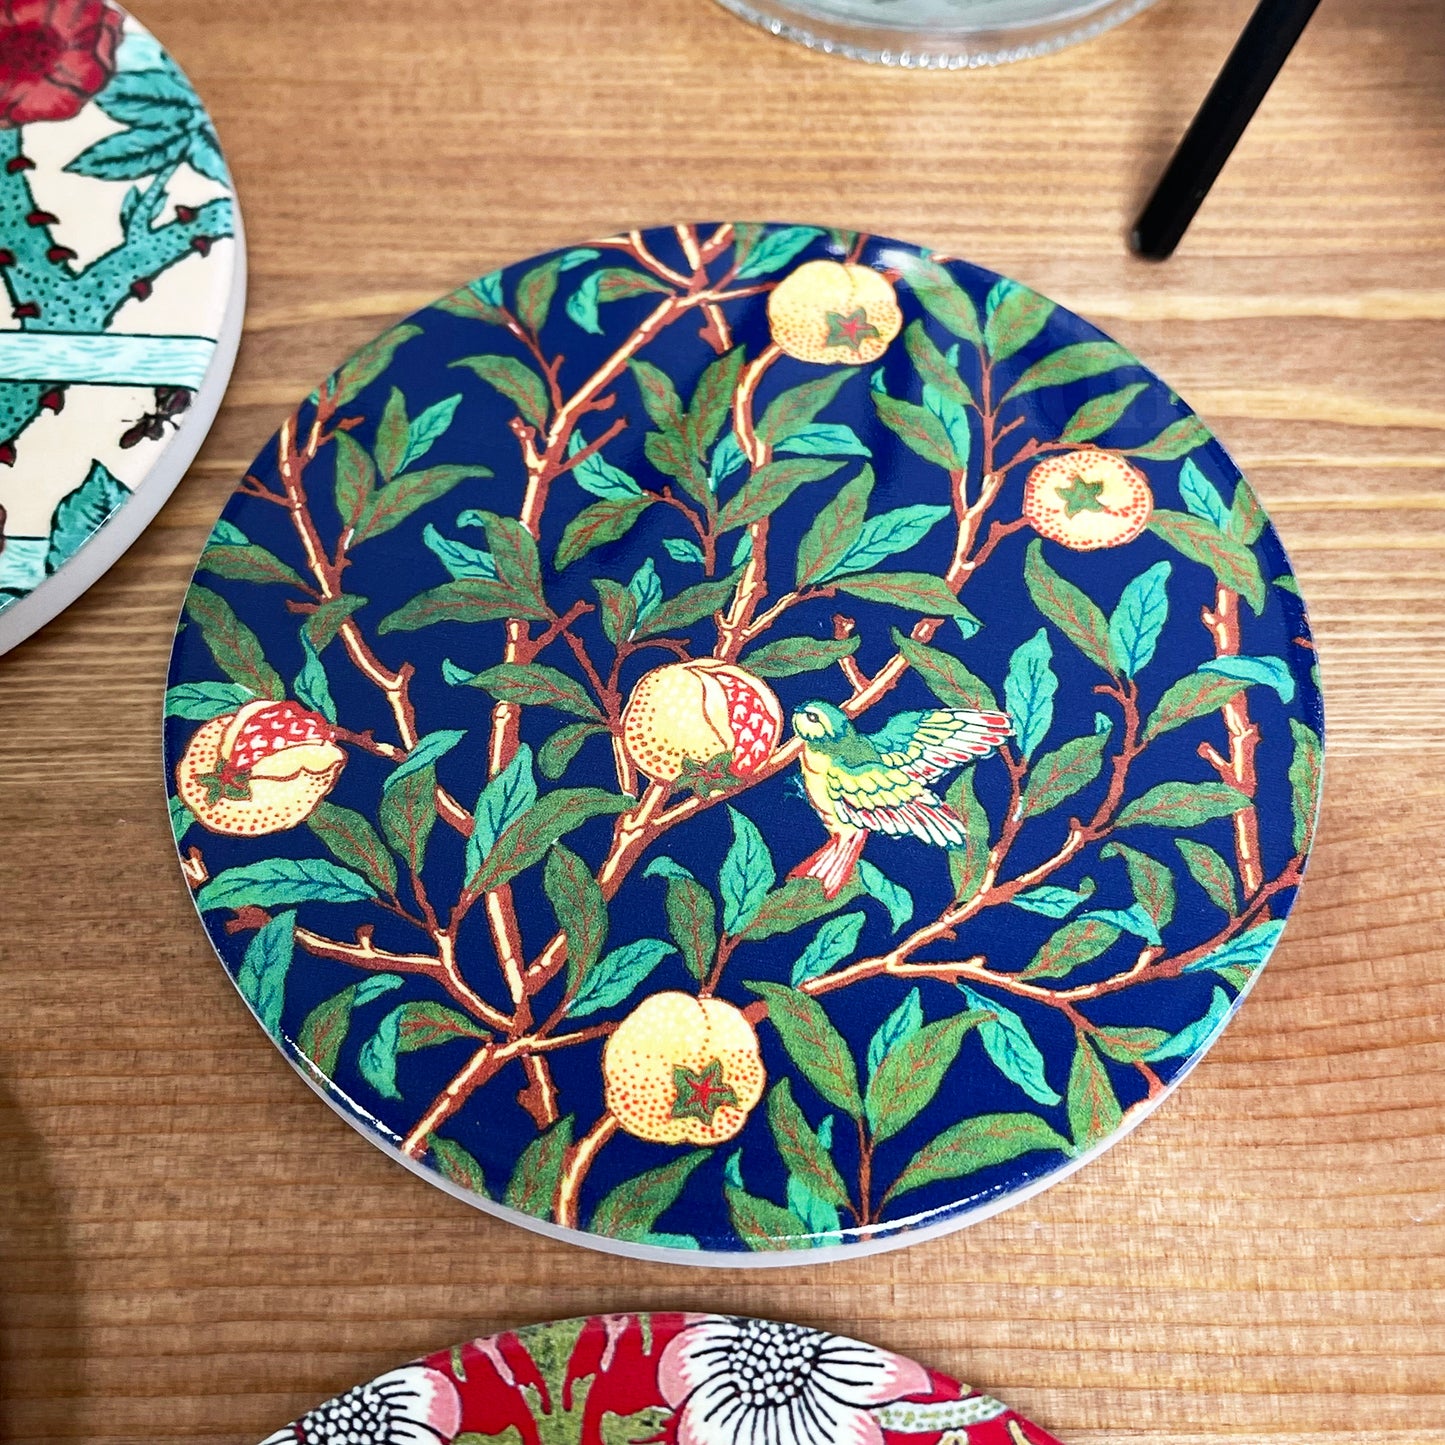 William Morris Ceramic Coaster Set Of 4